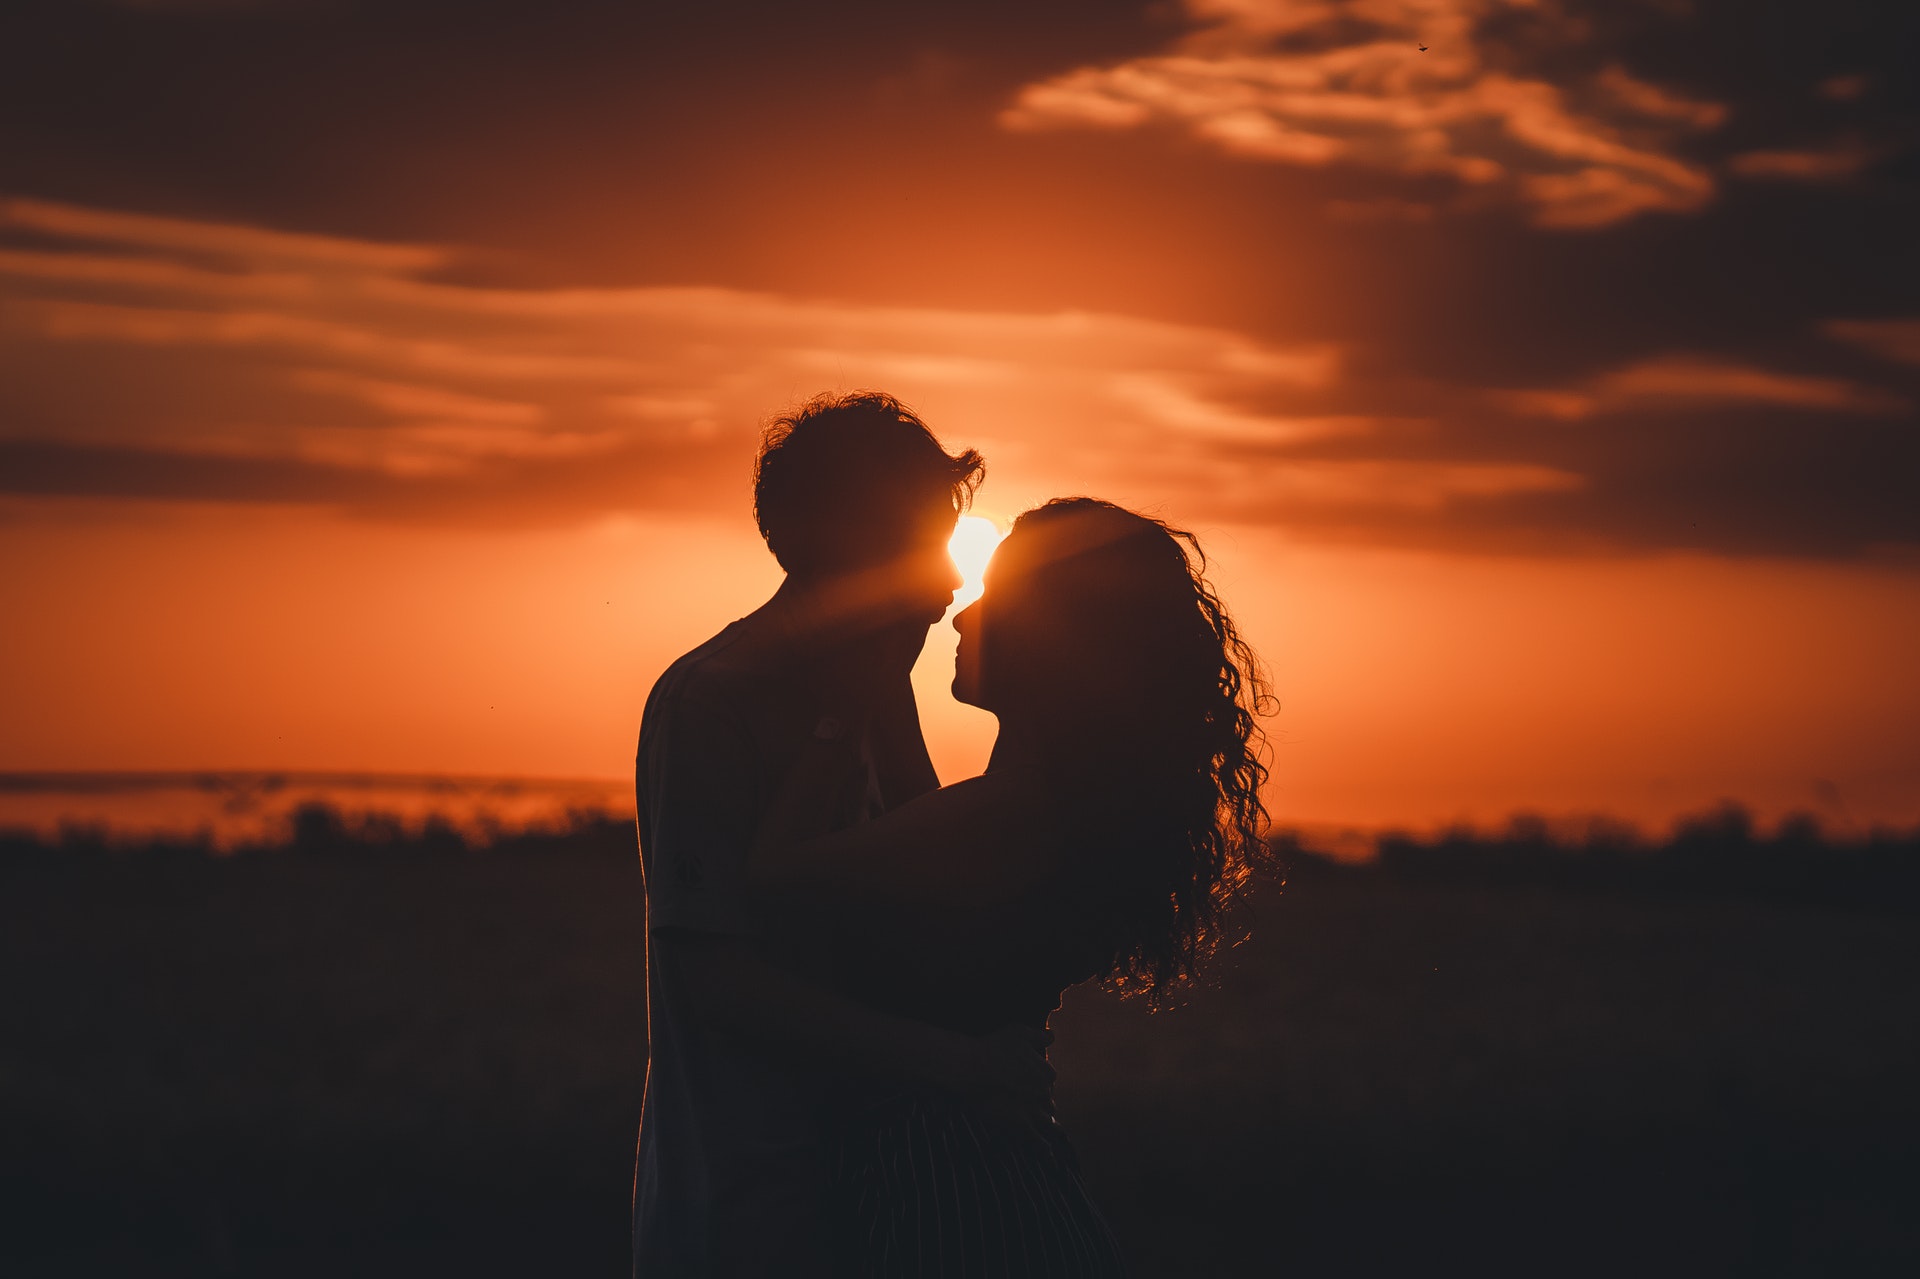 Shilouetten von Mann und Frau bei Sonnenuntergang